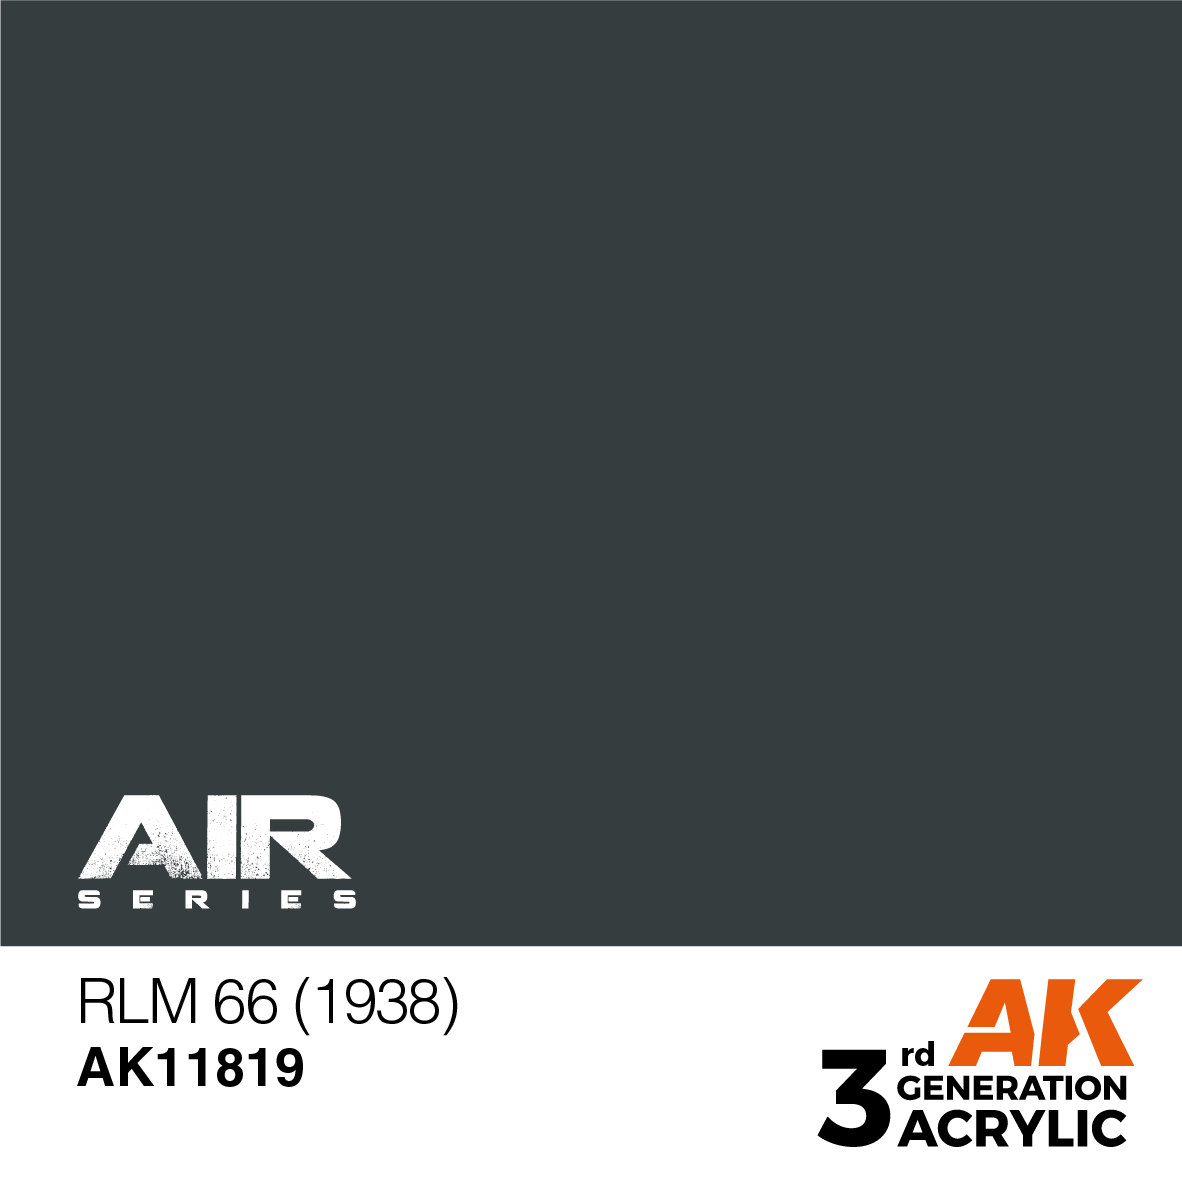 RLM 66 (1938) – AIR